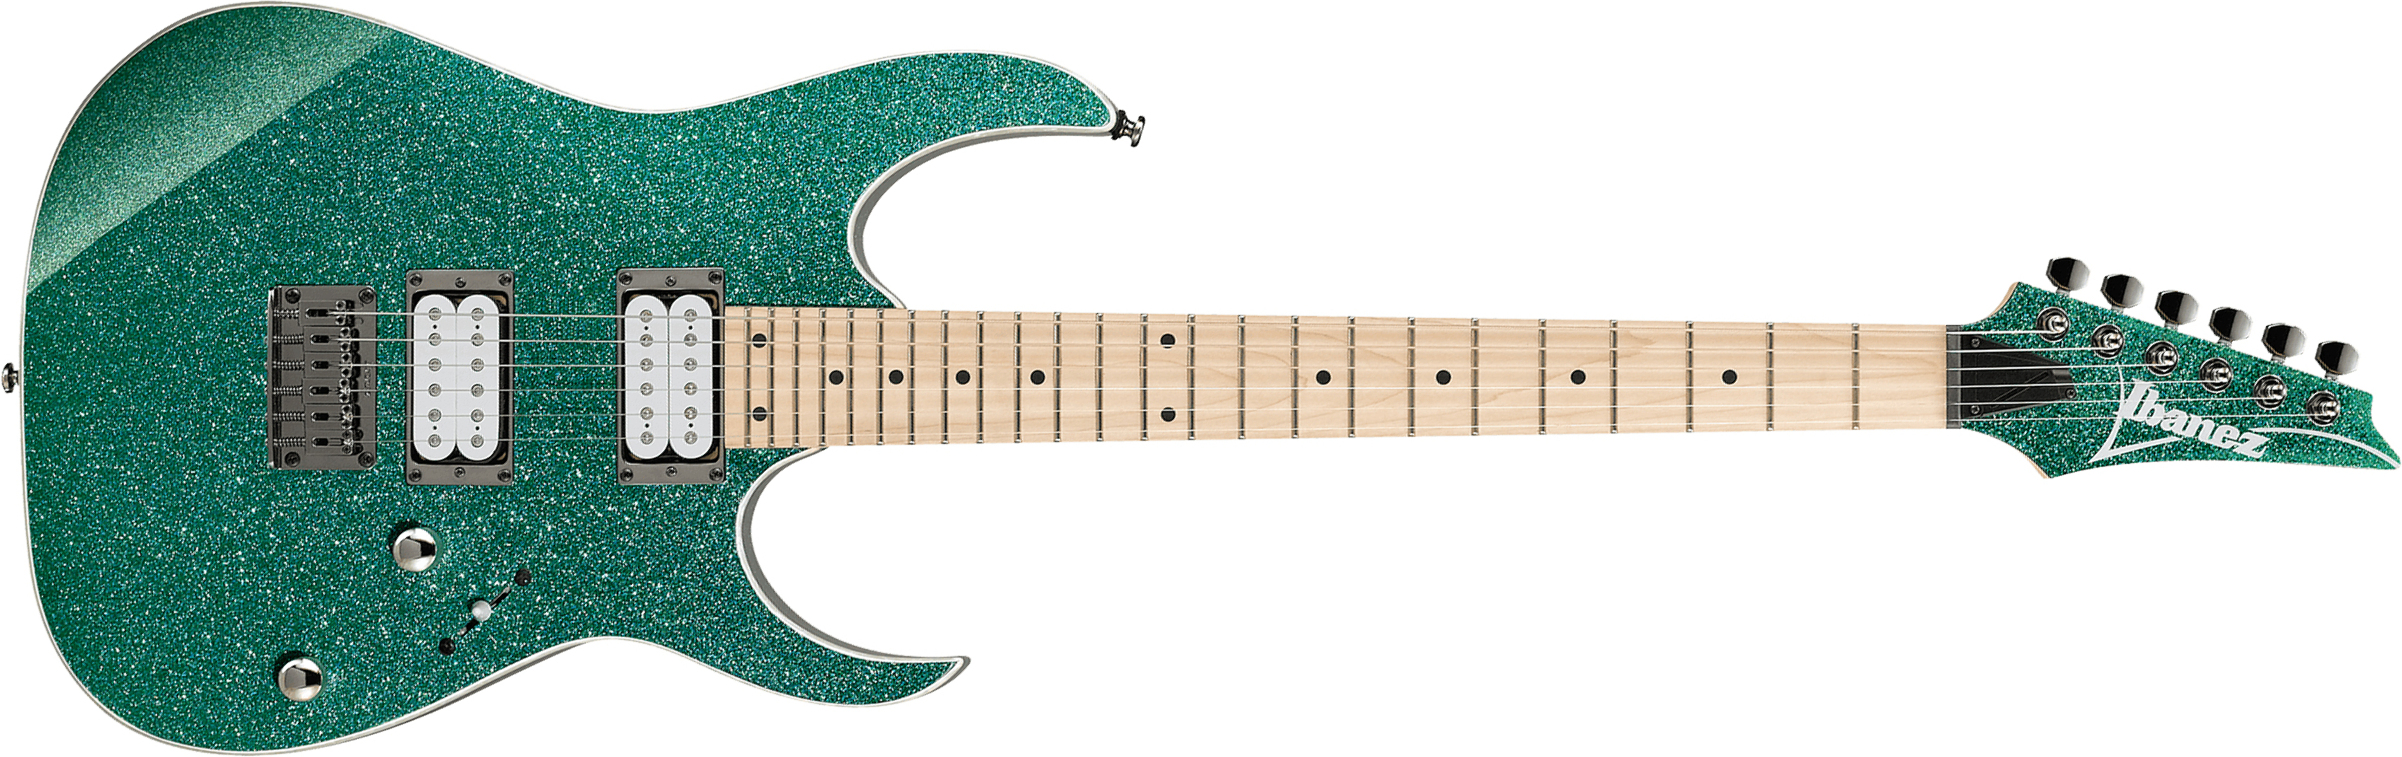 Ibanez Rg421msp Tsp Standard Ht Hh Mn - Turquoise Sparkle - Elektrische gitaar in Str-vorm - Main picture